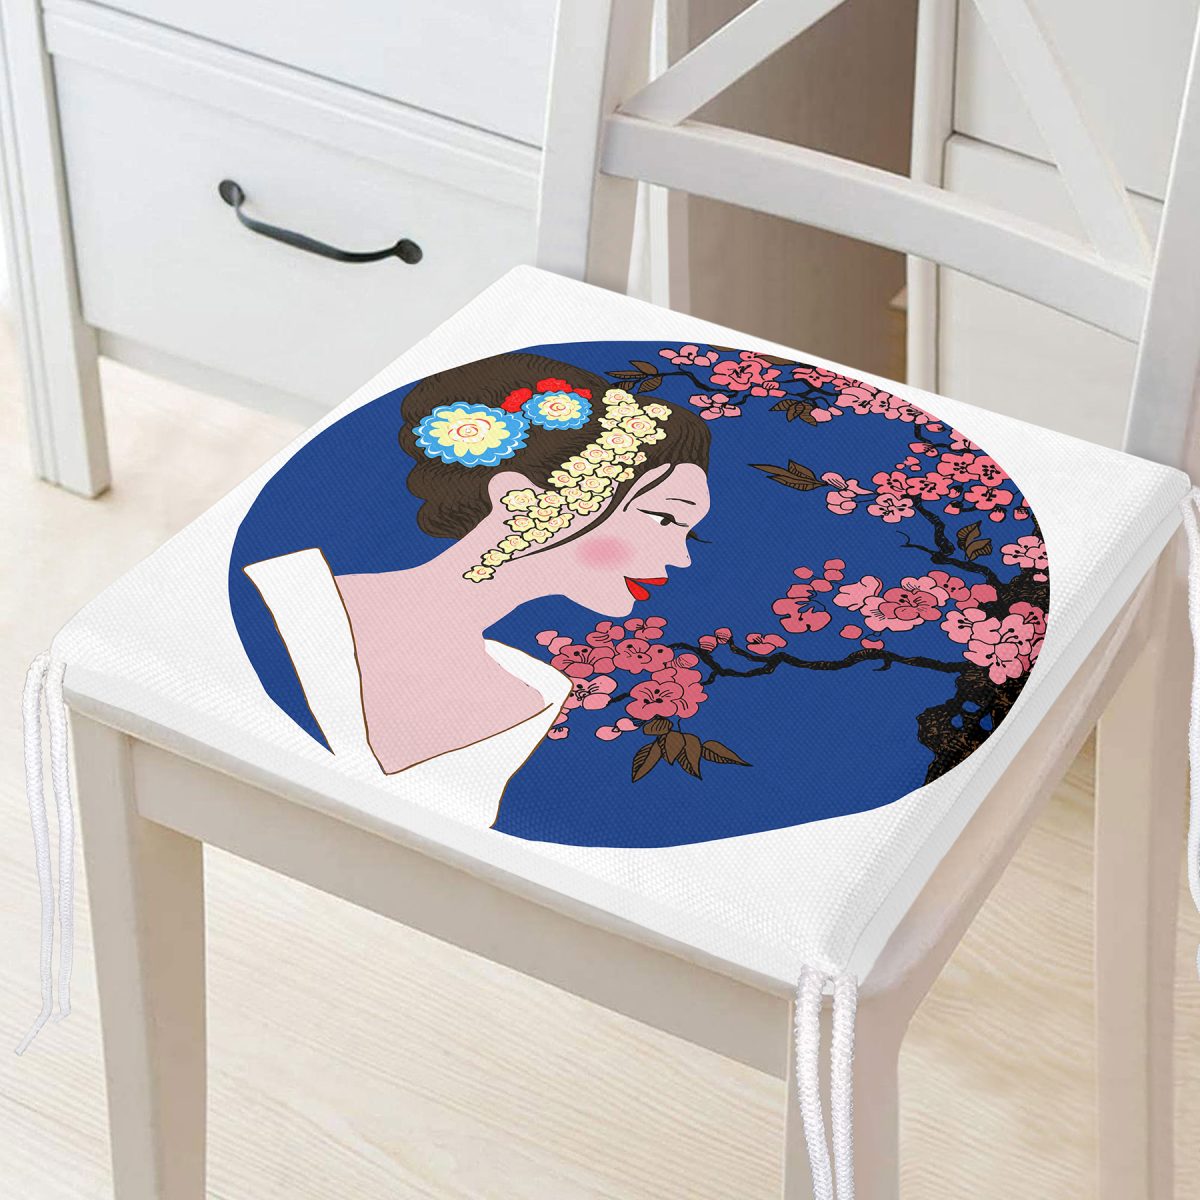 Çiçek Motifli Japon Kız Desenli Dekoratif Fermuarlı Sandalye Minderi Realhomes